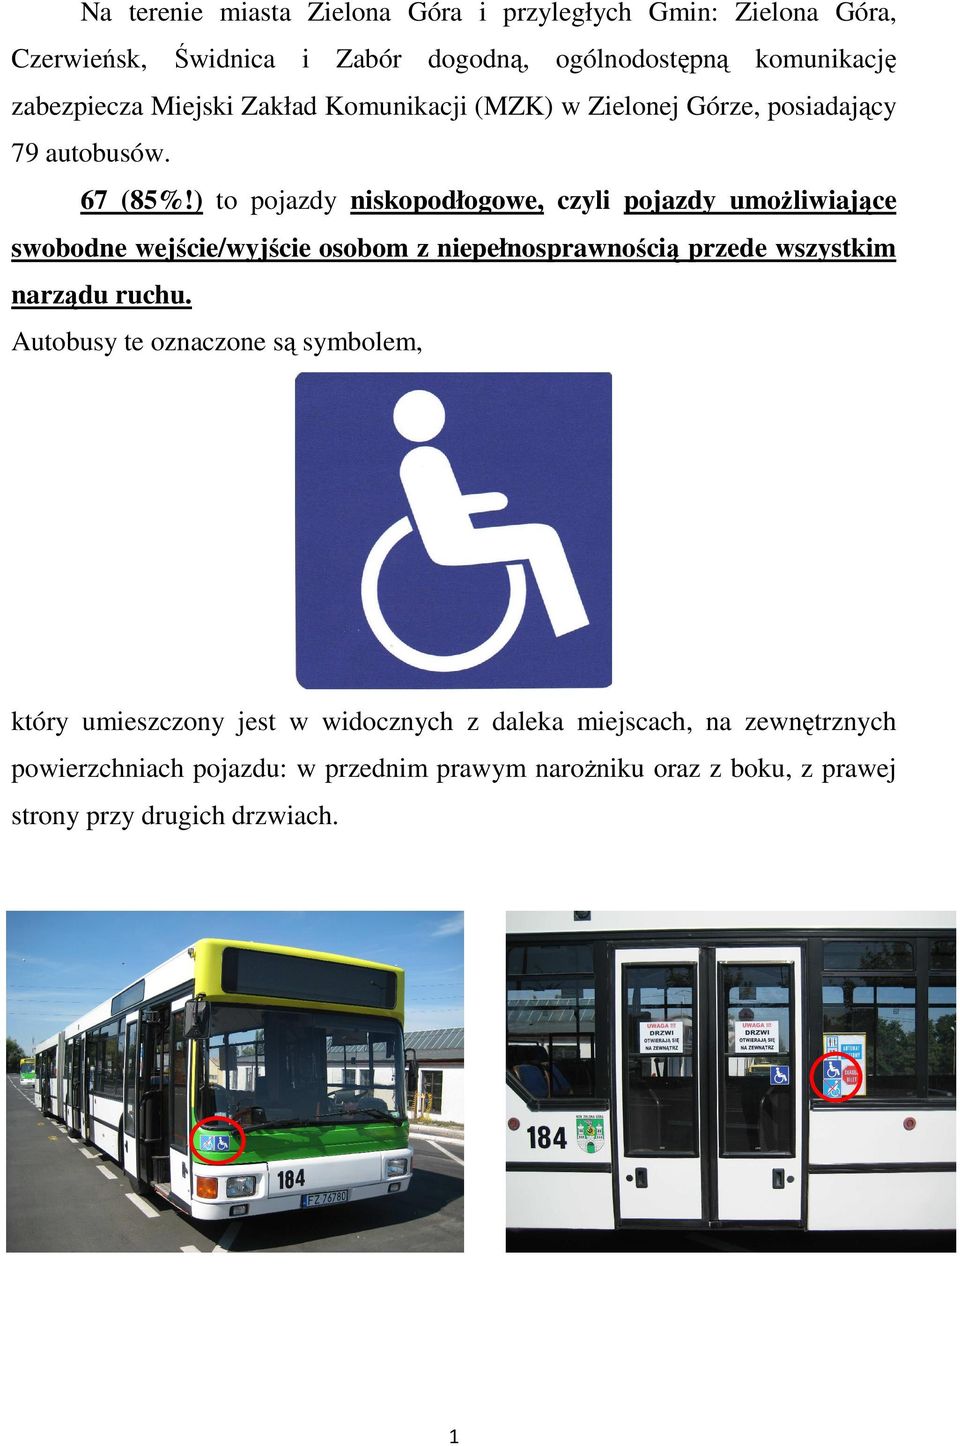 ) to pojazdy niskopodłogowe, czyli pojazdy umoŝliwiające swobodne wejście/wyjście osobom z niepełnosprawnością przede wszystkim narządu ruchu.